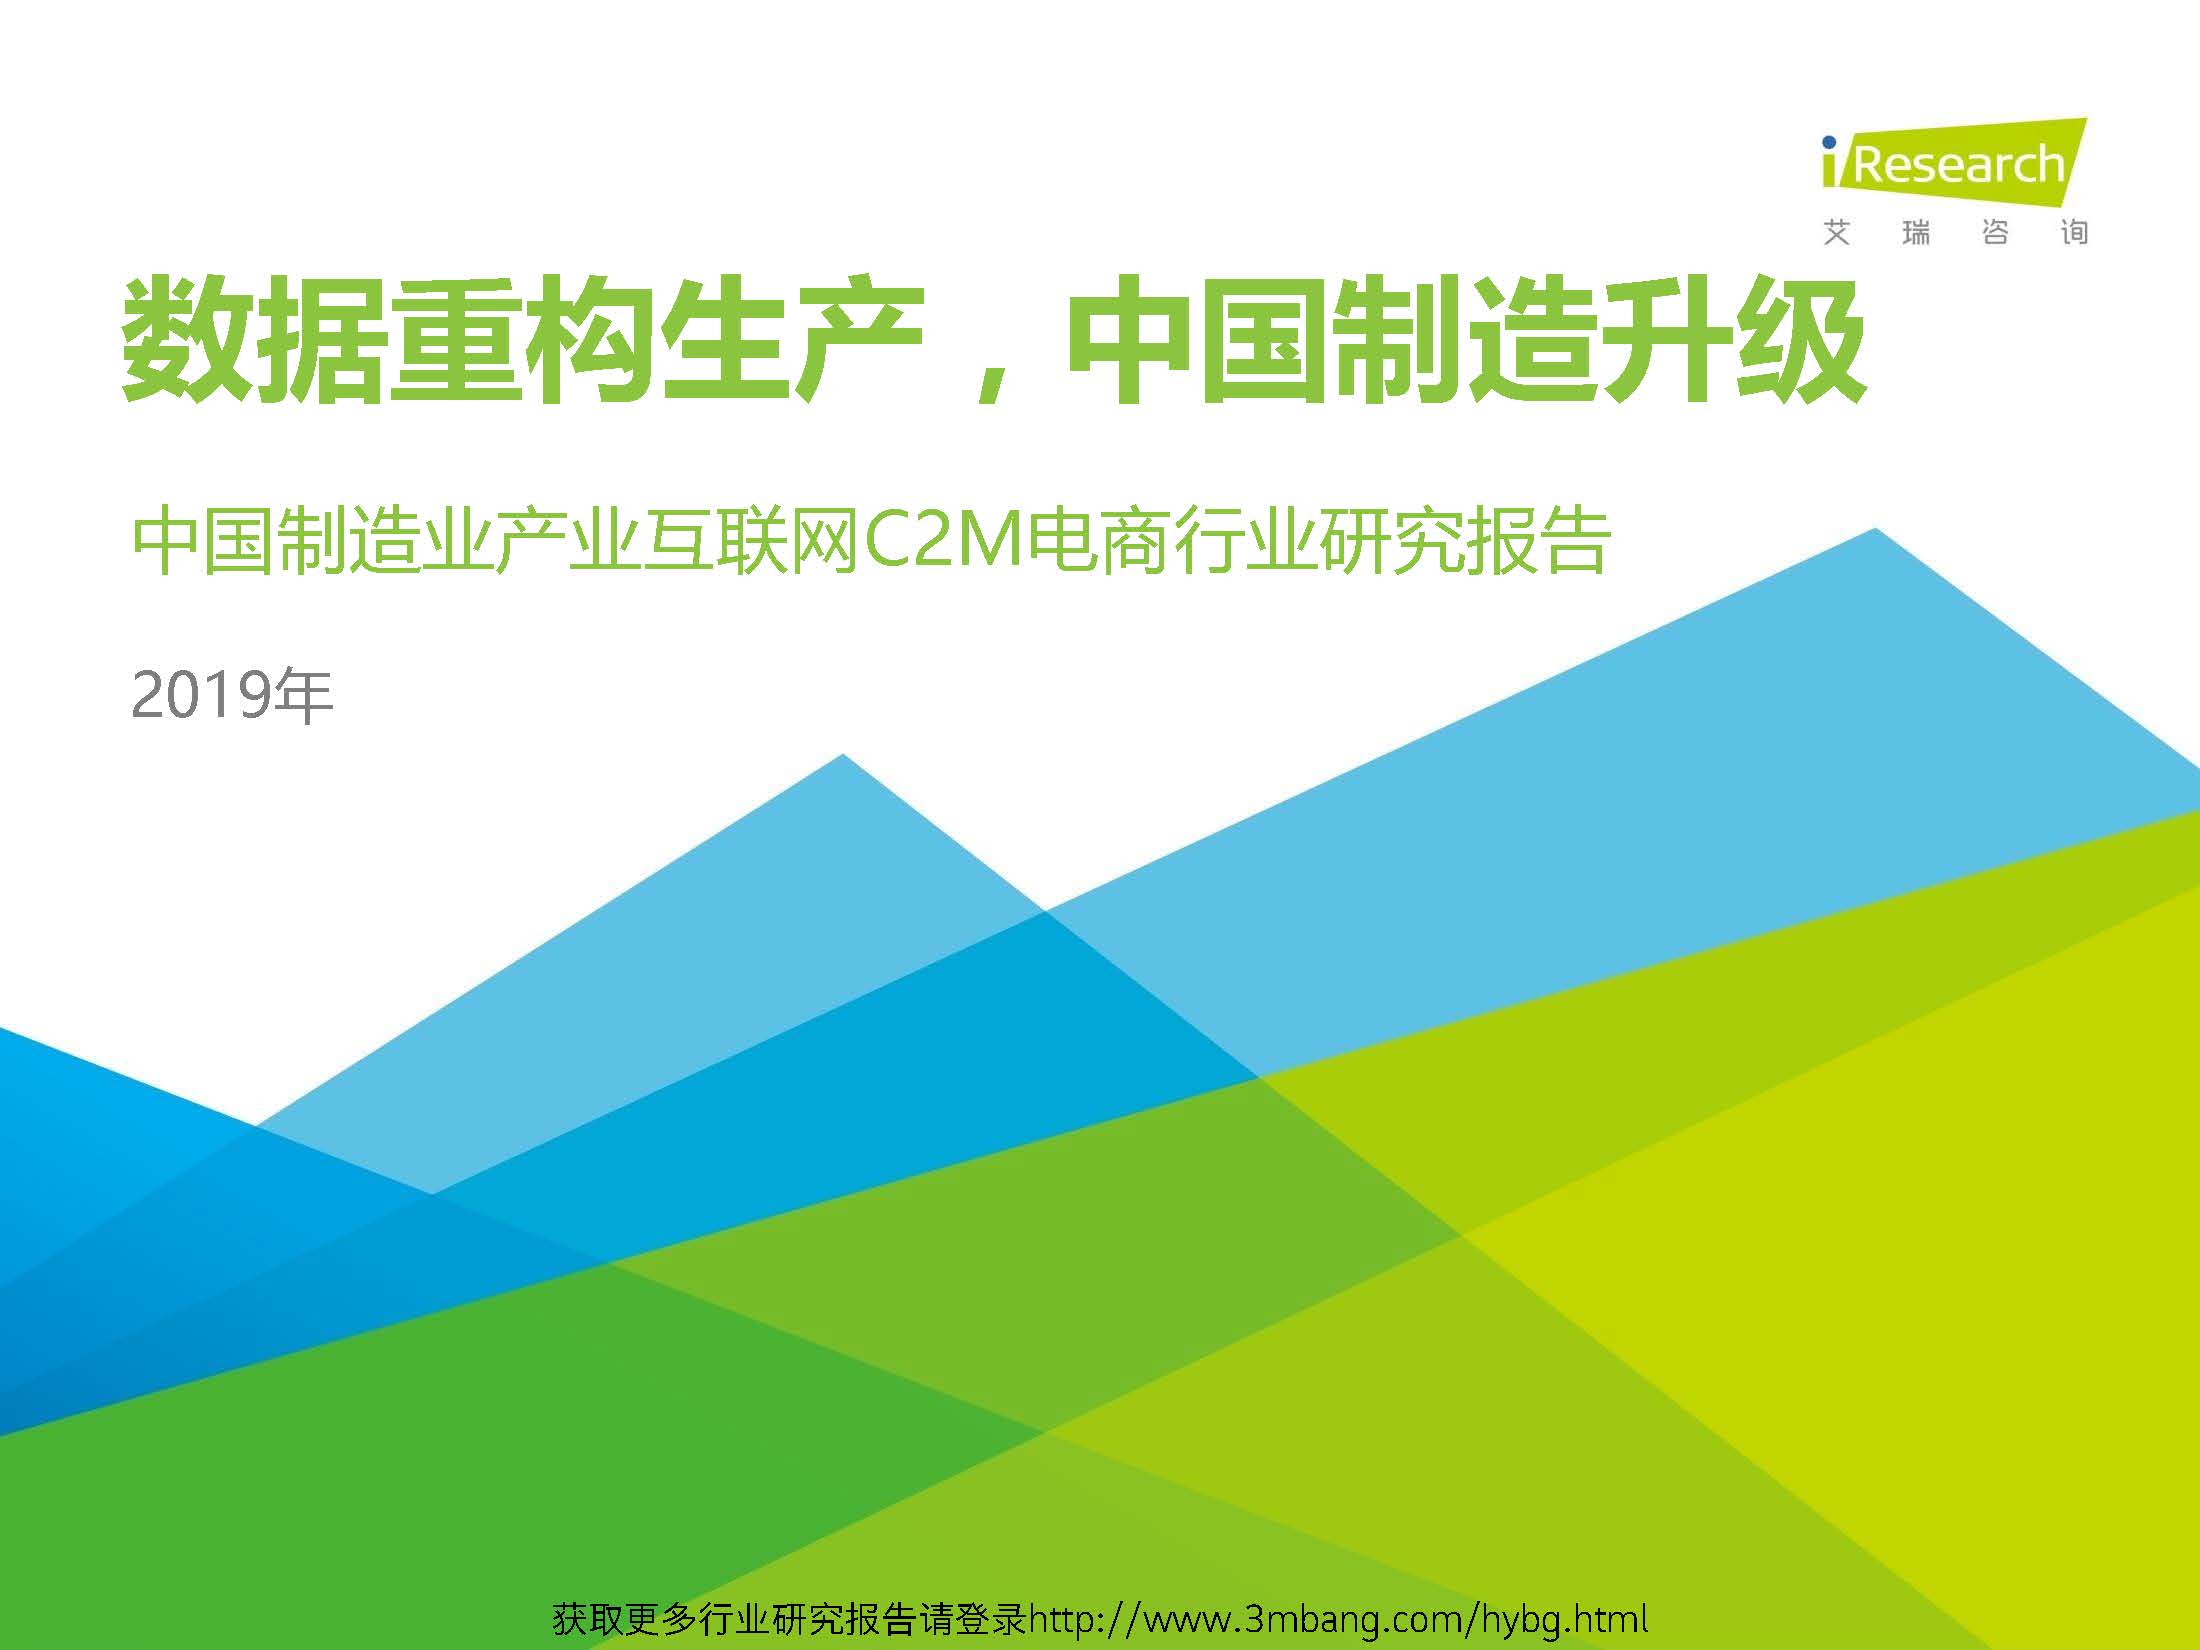 艾瑞：2019年中国制造业产业互联网C2M电商行业研究报告（附下载地址）